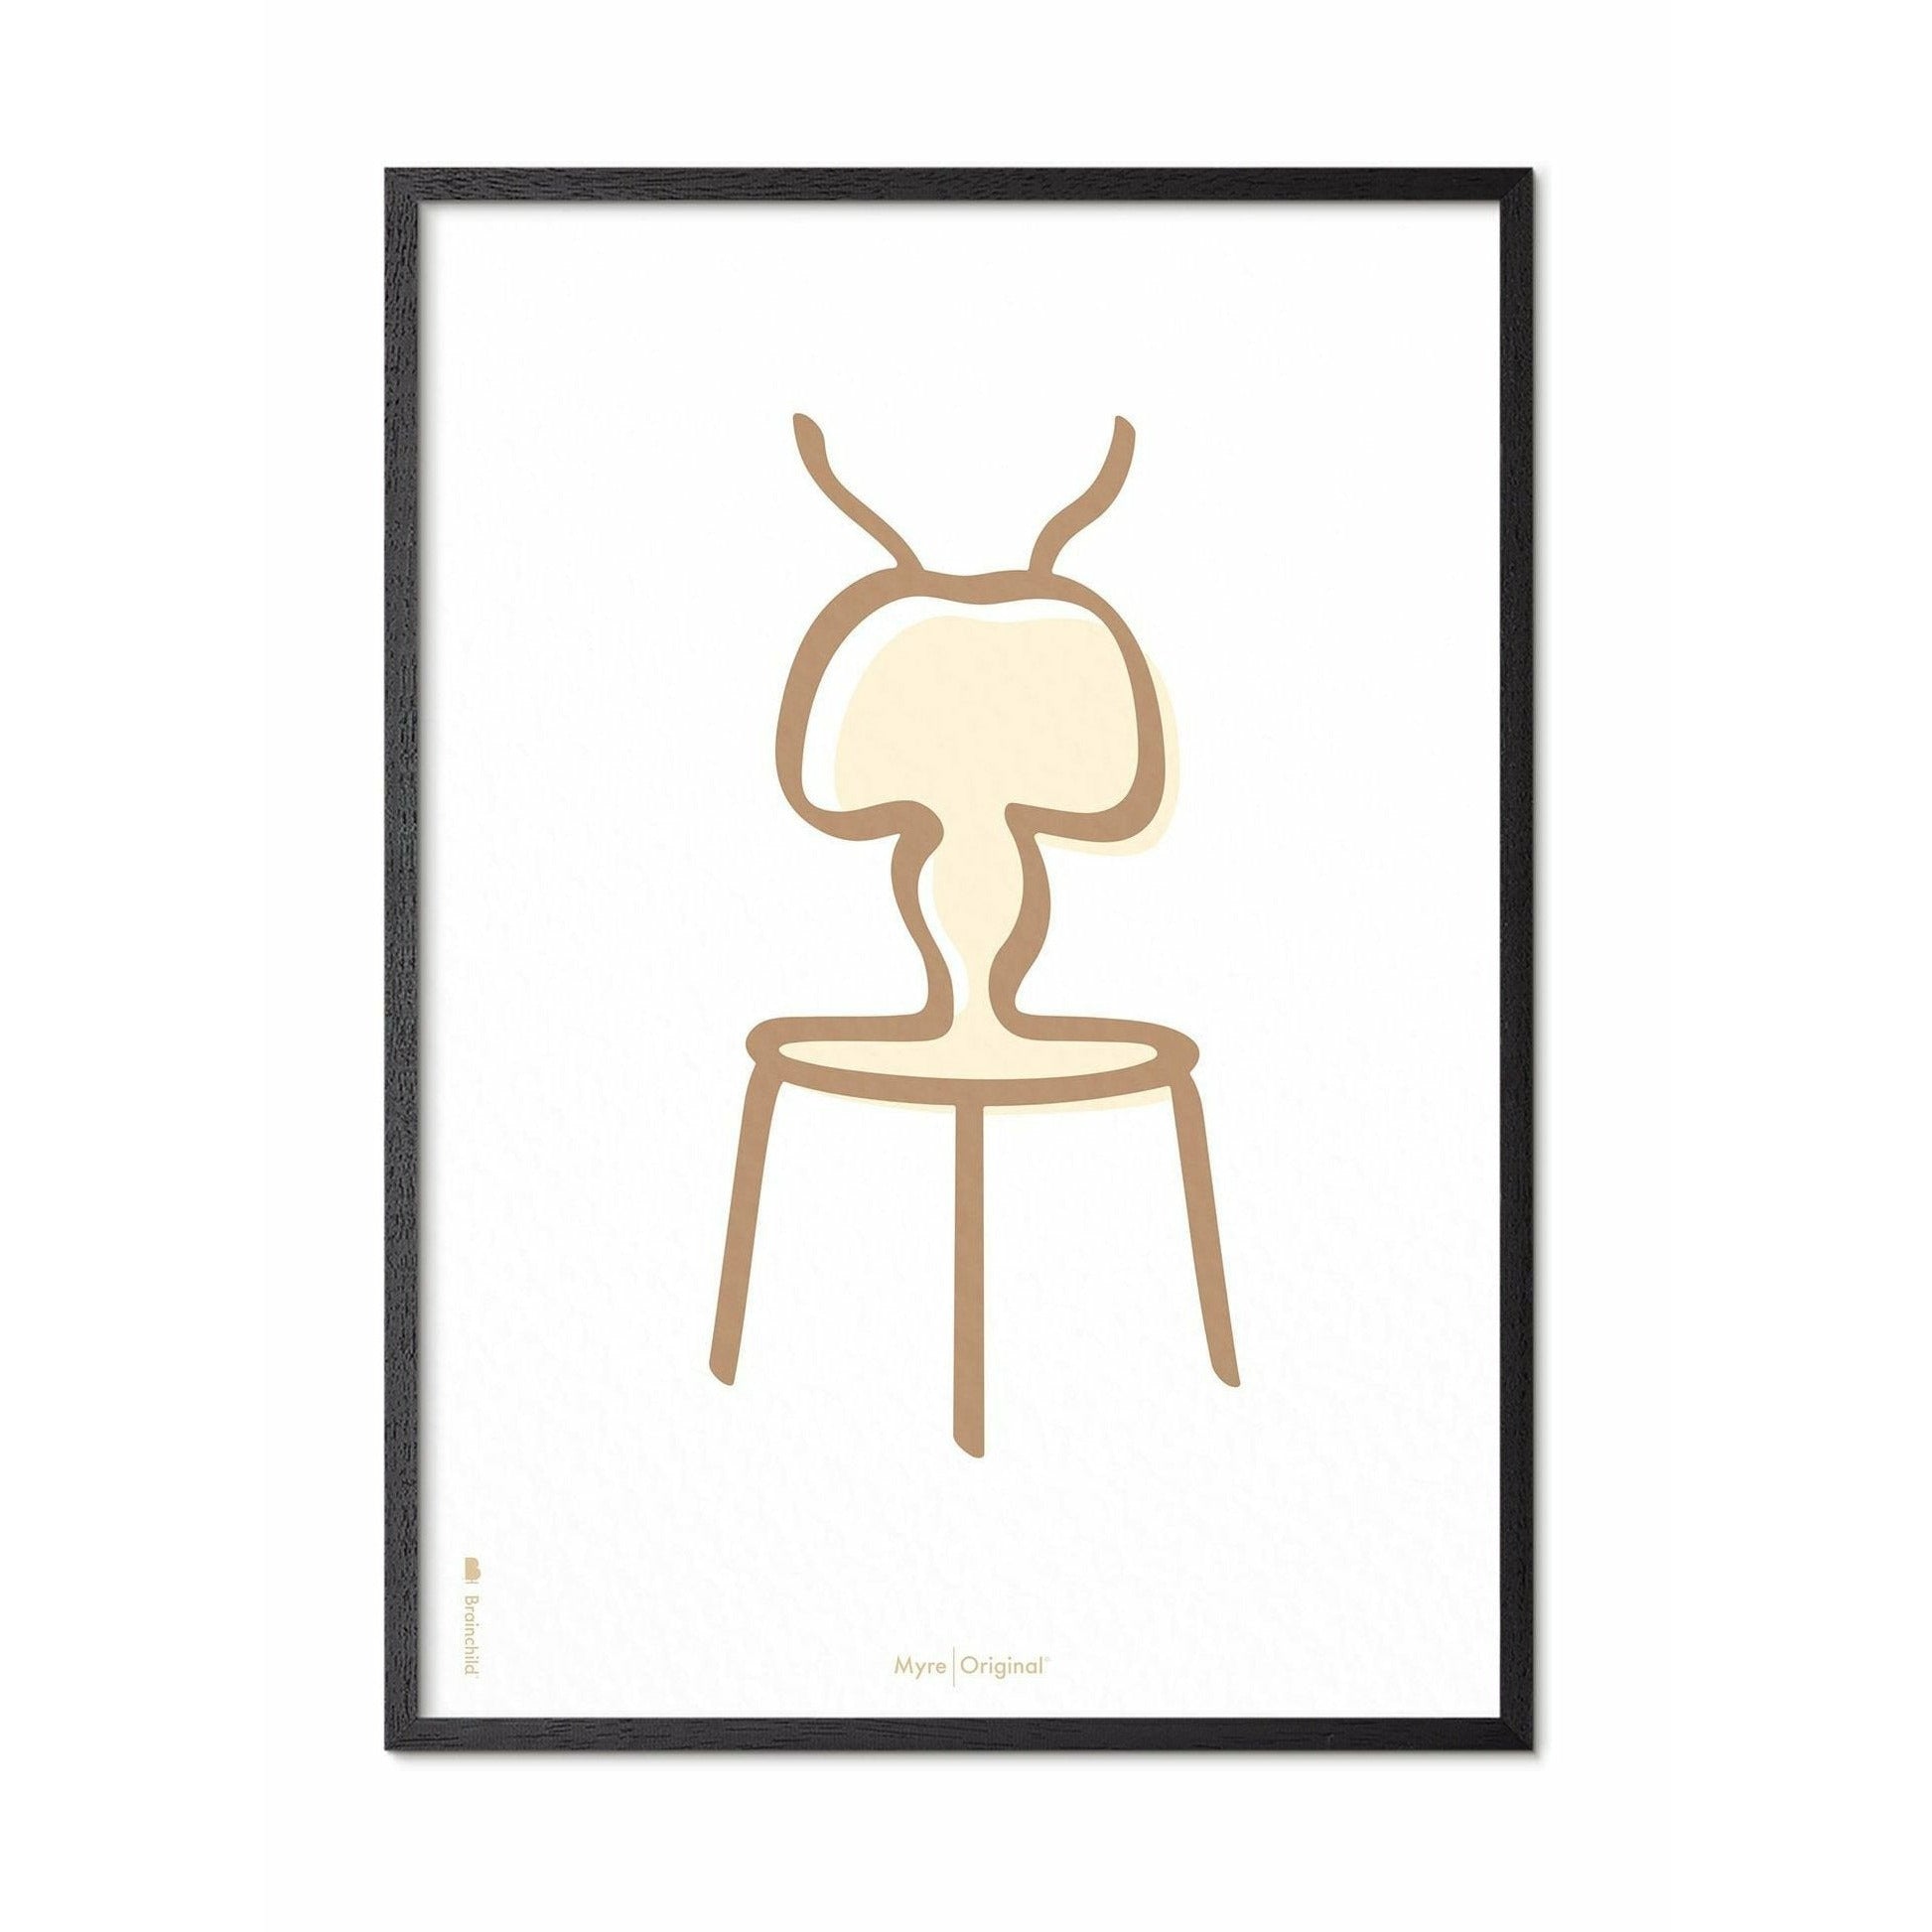 Plakát Ant Line Brainchild, rám v černém lakovaném dřevu 30x40 cm, bílé pozadí